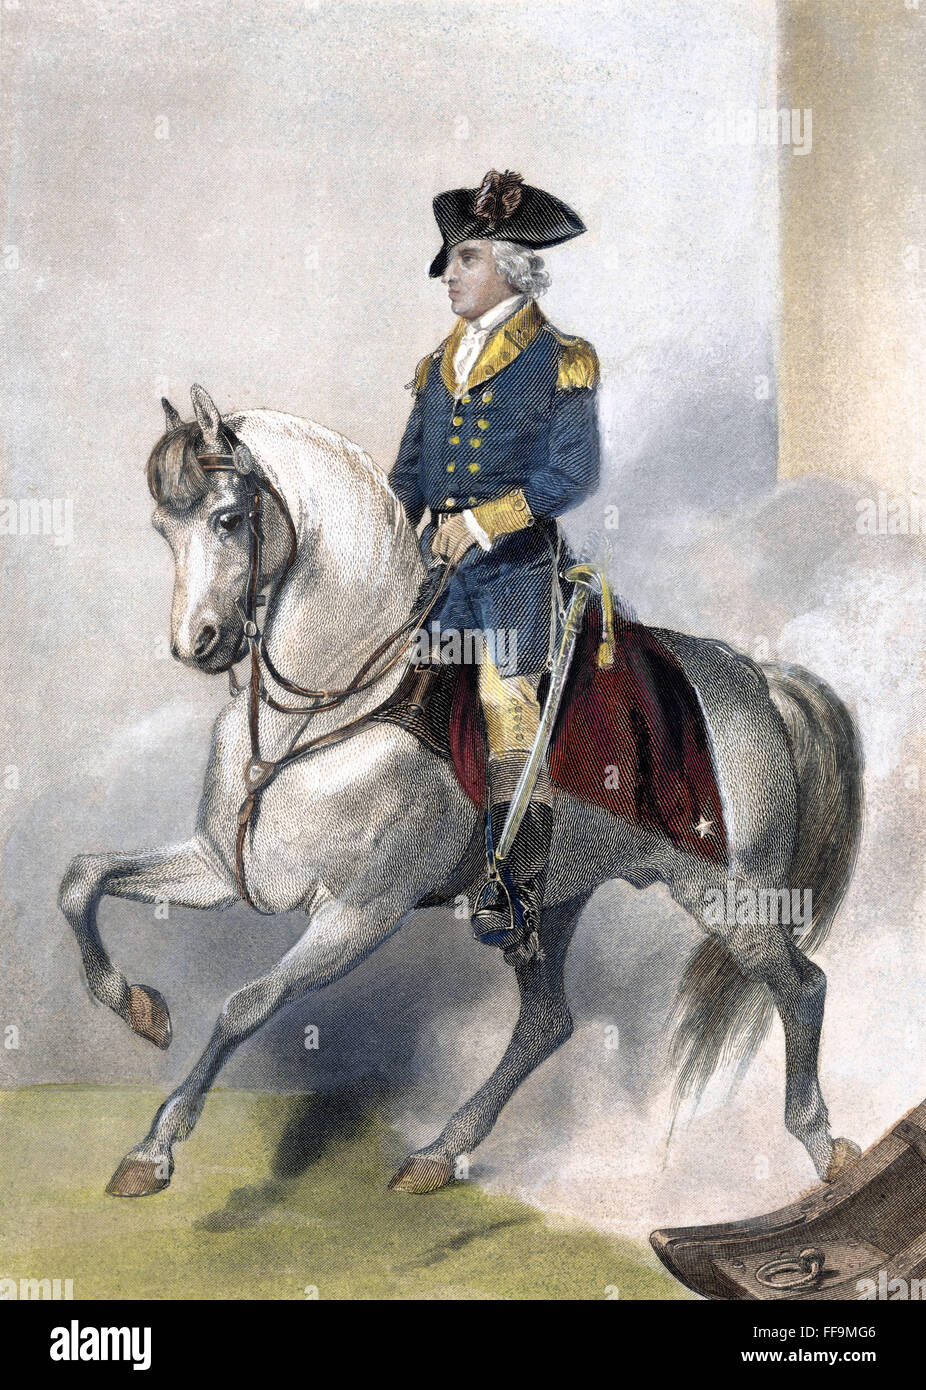 HORATIO GATES (c1728-1806). /NAmerican rivoluzionario officer. Incisione in acciaio, americano, xix secolo. Foto Stock